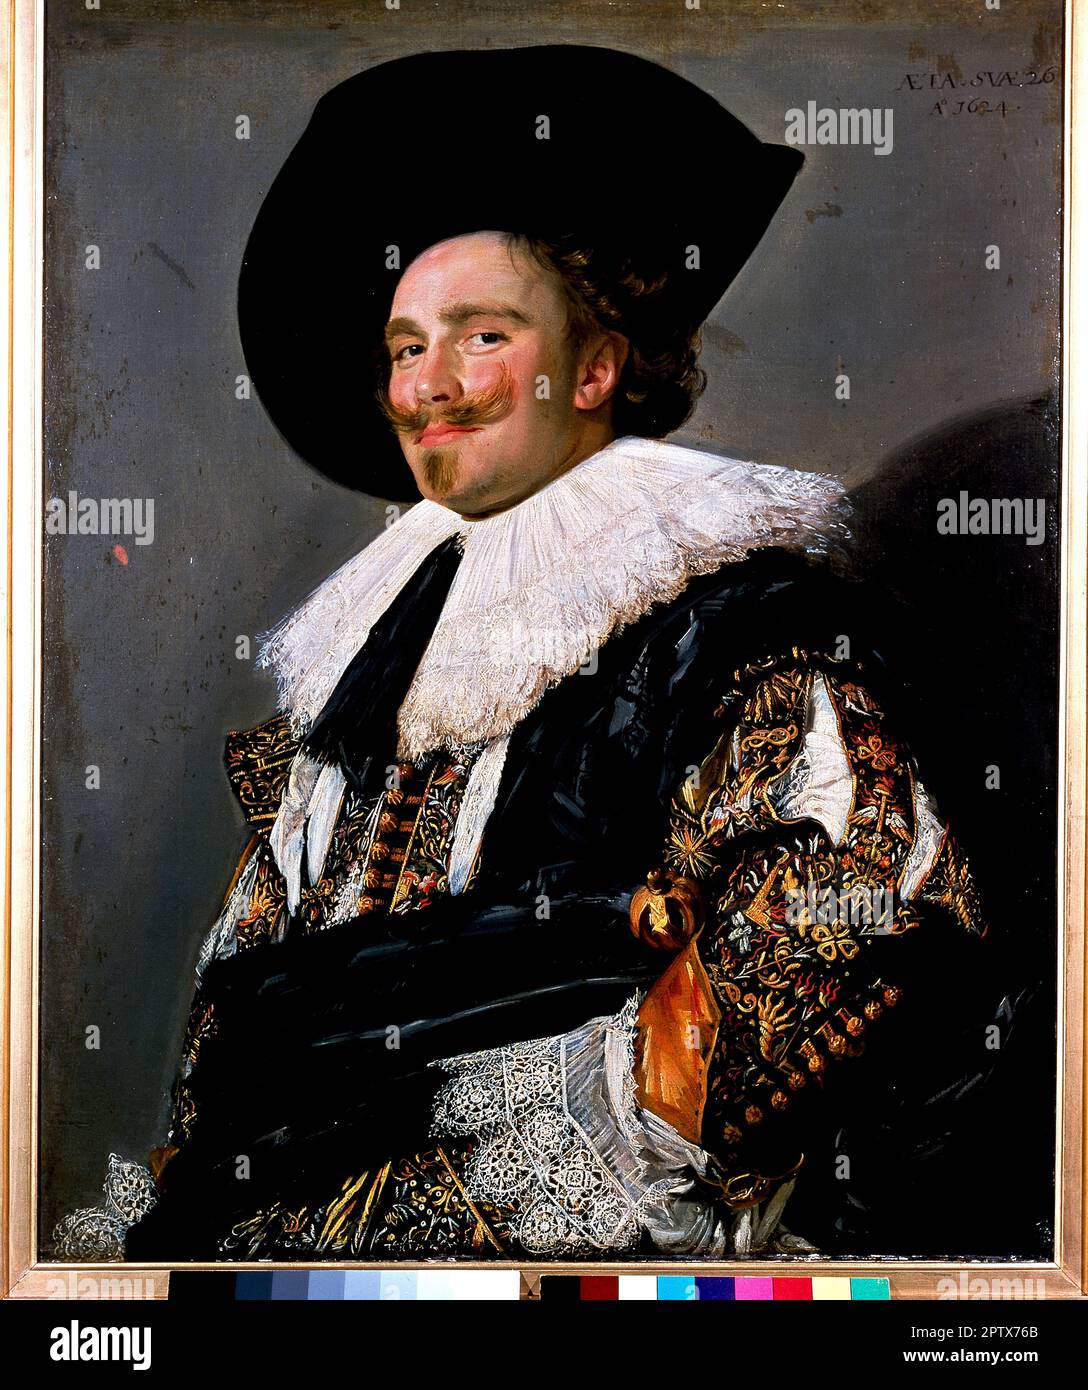 Il Cavalier Laughing. Pittura dell'artista olandese Frans Hals. 1624. Collezione Wallace. Londra. Foto Stock